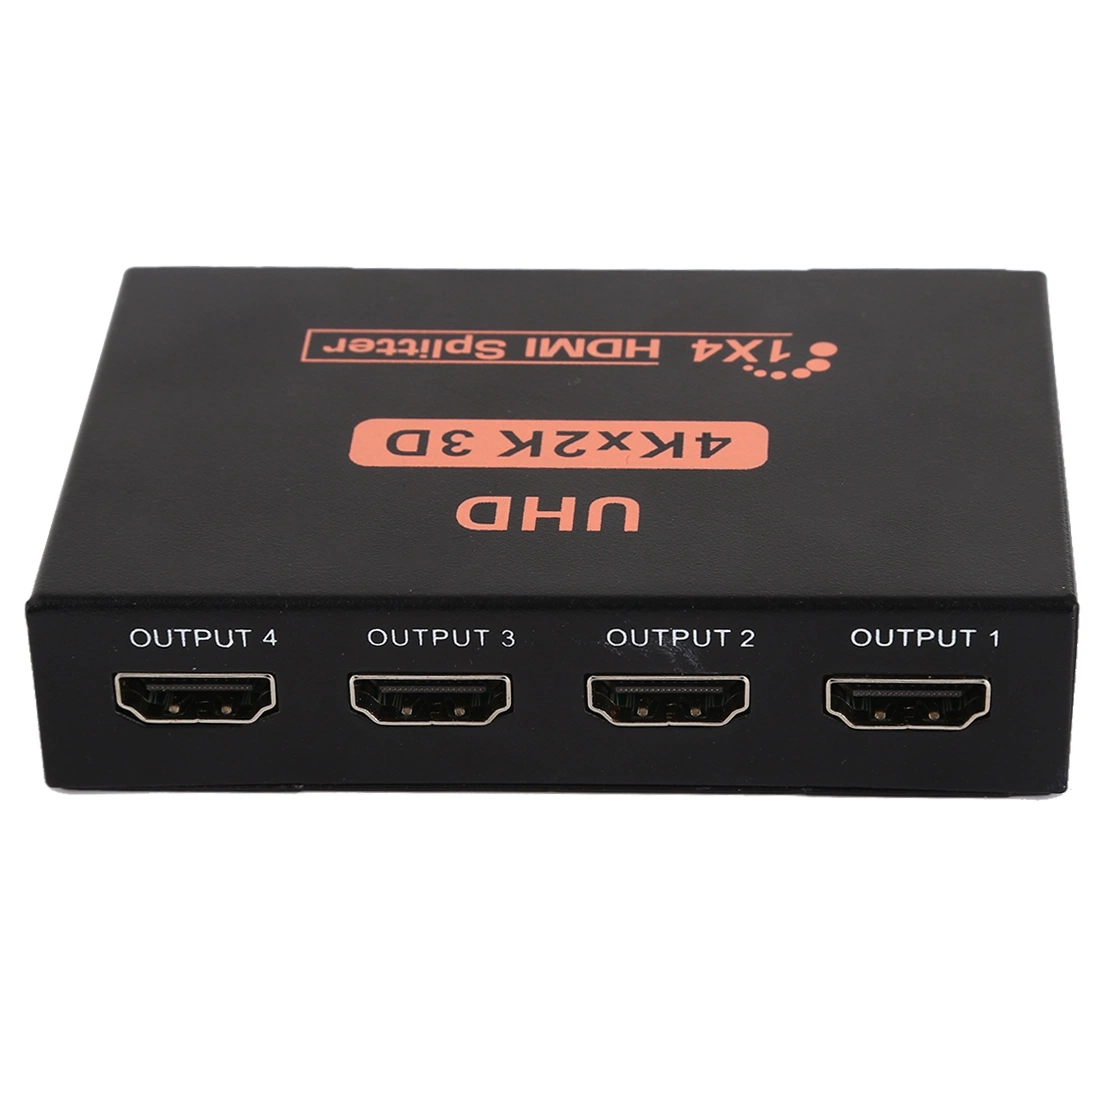 UHD 4kx2k 3D 1X4 HDMI séparateur 1 entrée 4 sortie Adaptateur pour moniteur HDTV - prise eu